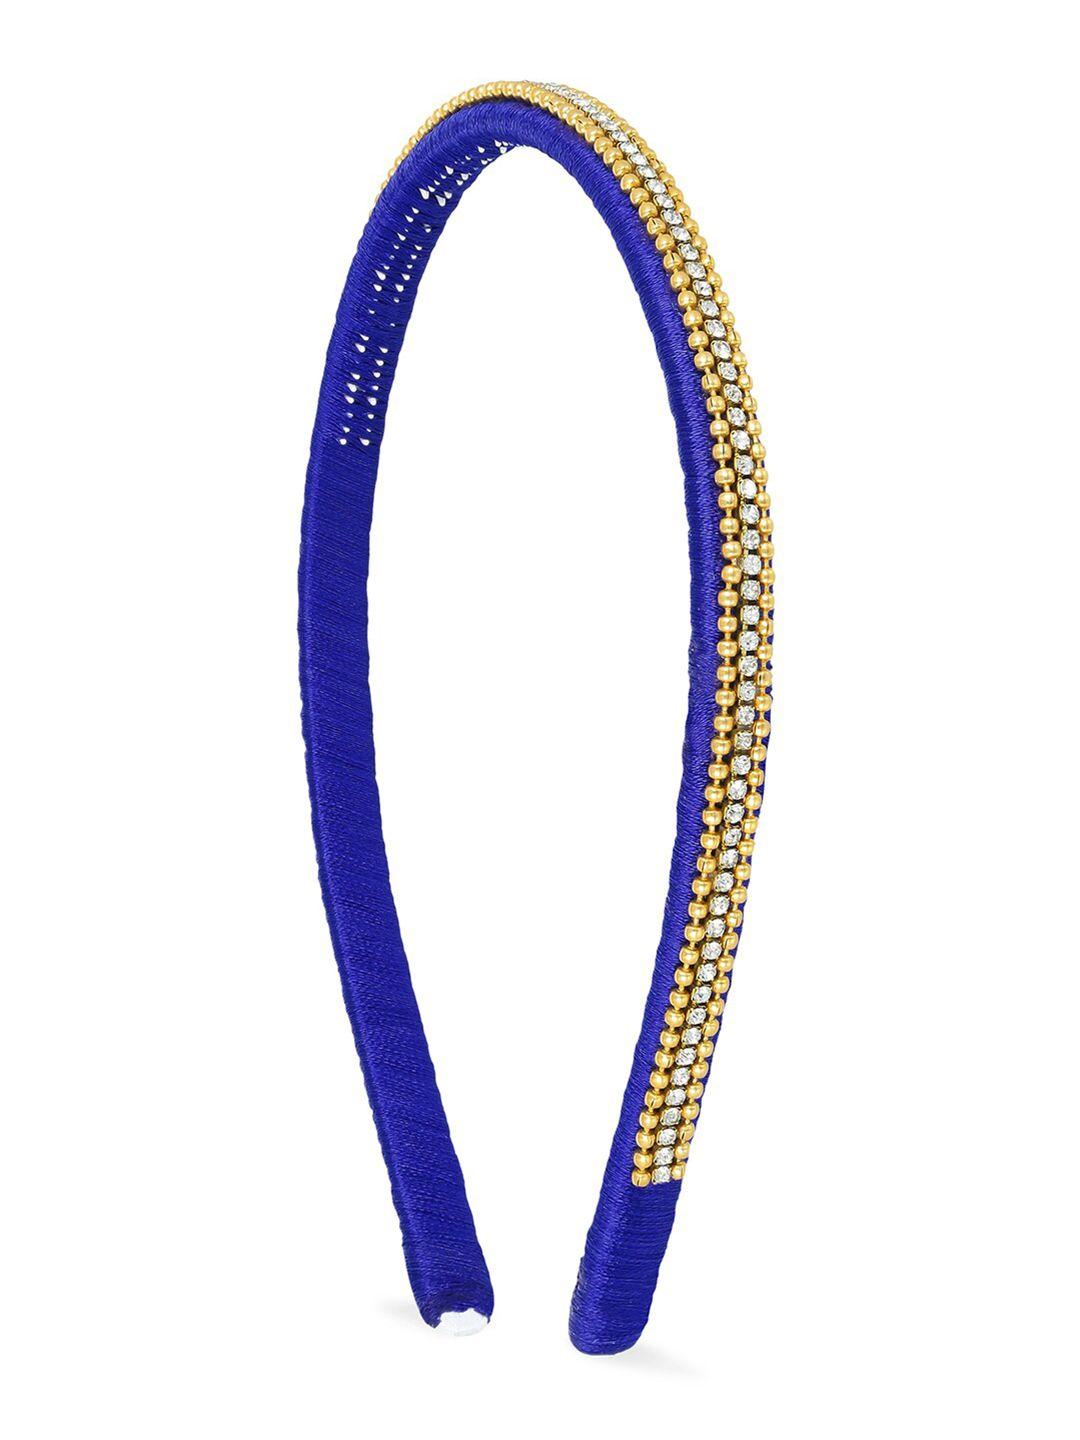 akshara girls blue & gold-toned embellished hairband